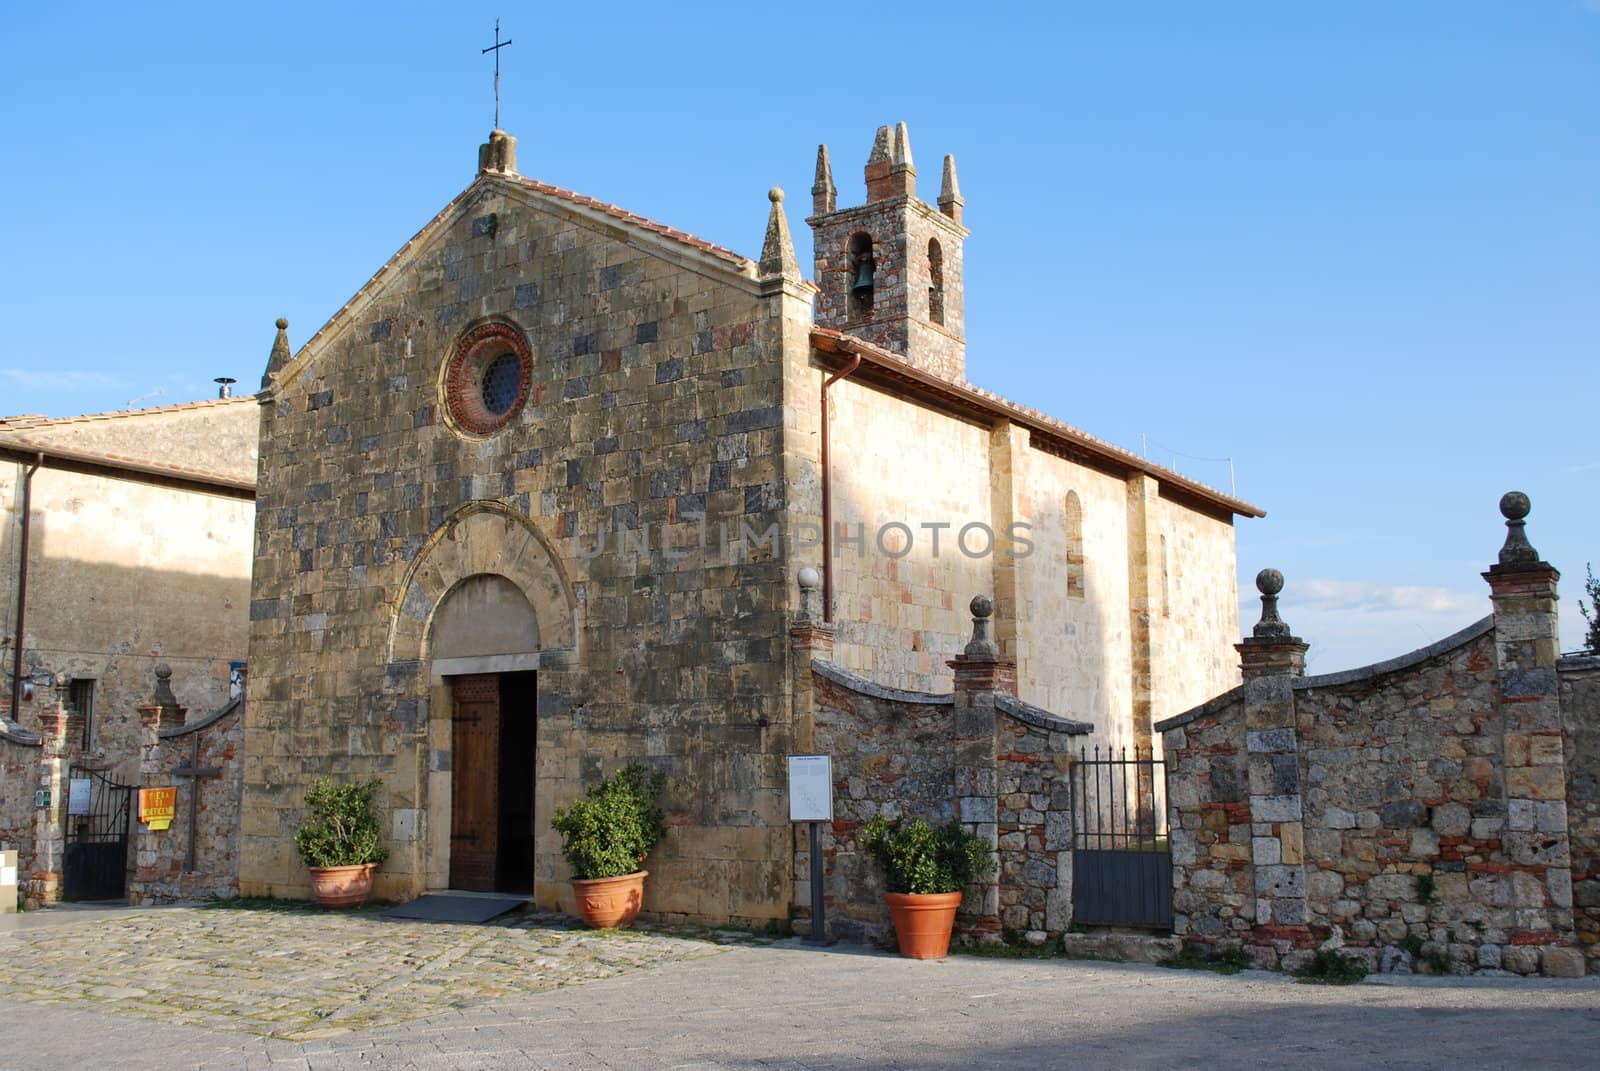 The church of Monteriggioni by mizio1970